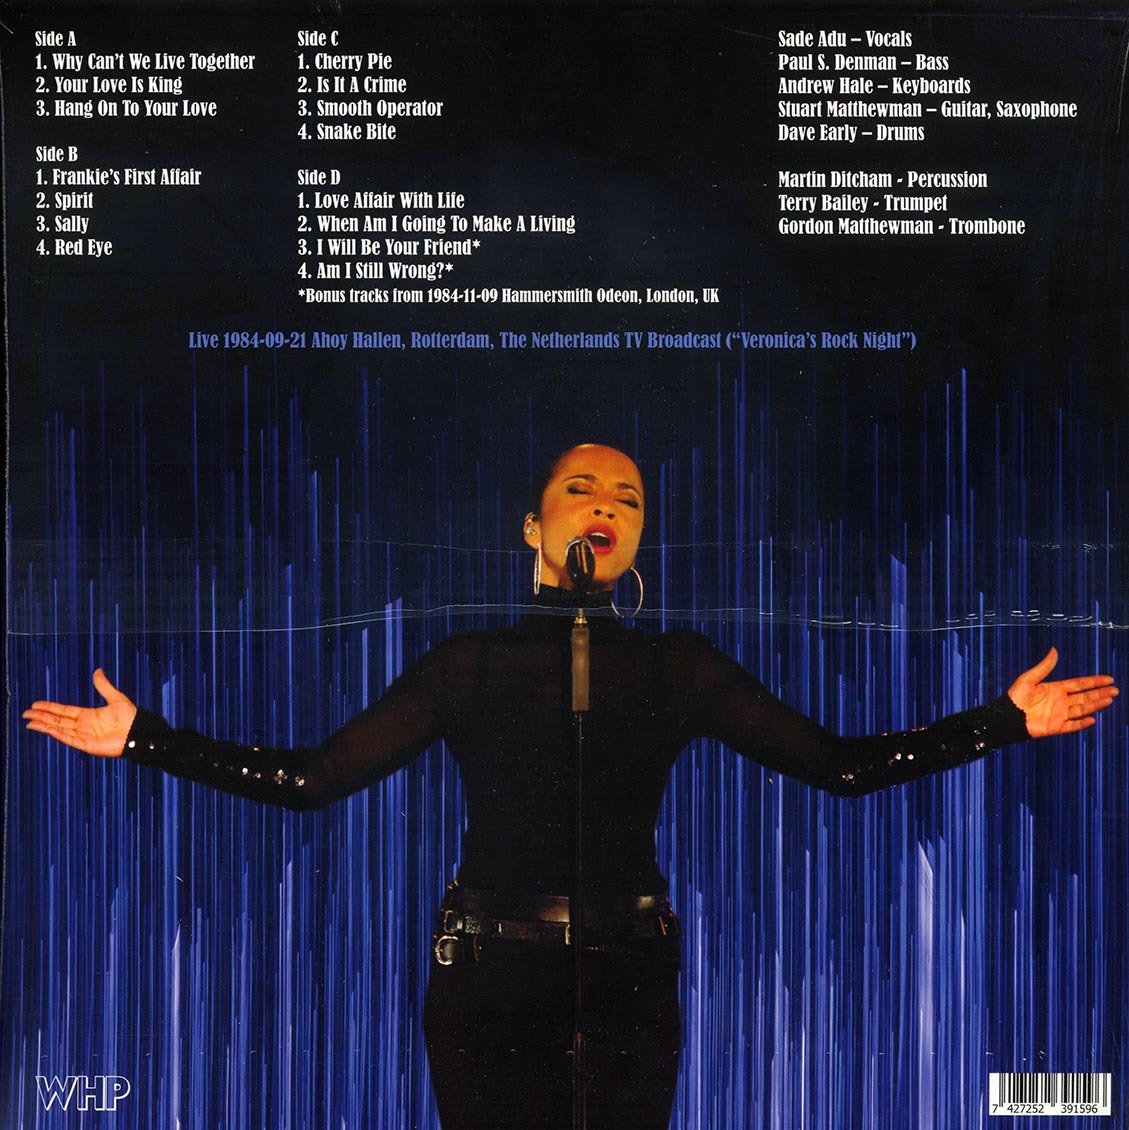 Sade - Live 1984-09-21 Ahoy Hallen, Rotterdam (ltd. ed.) (2xLP) (blue vinyl) - Vinyl LP, LP